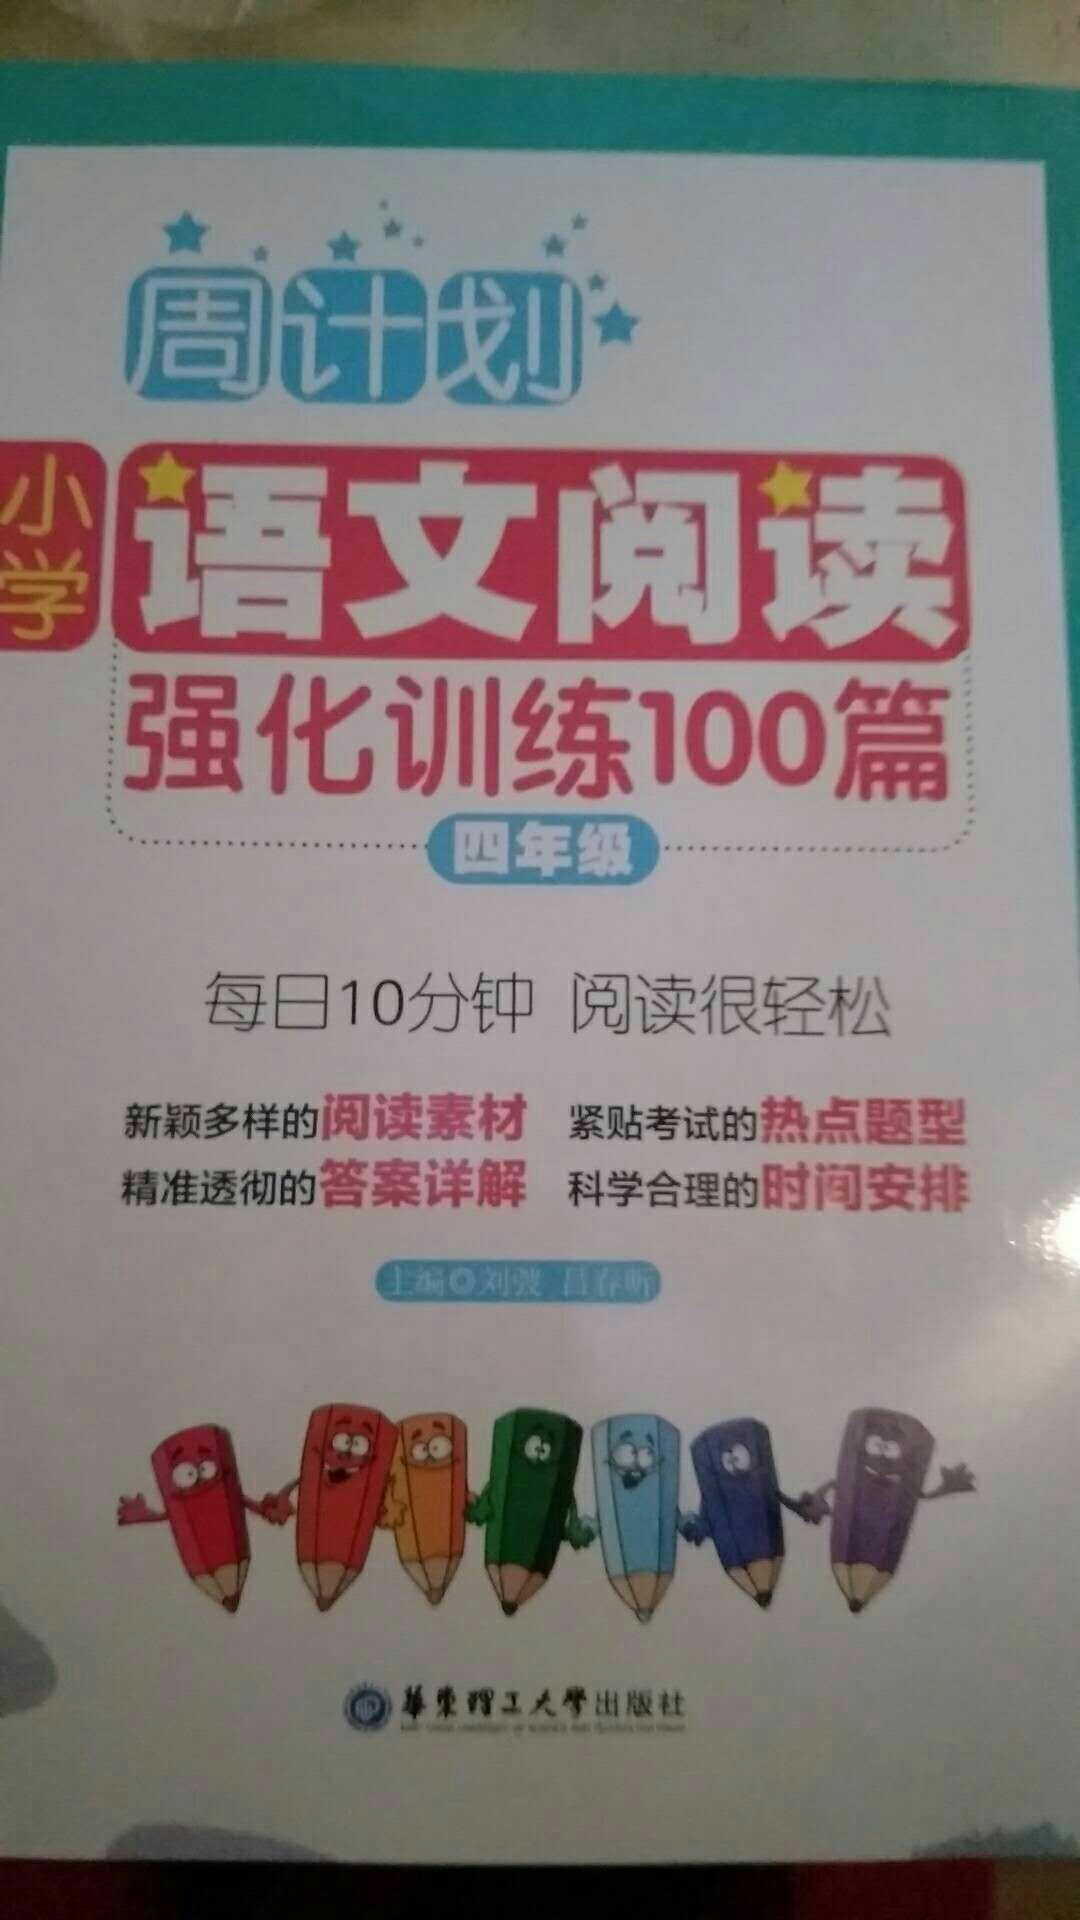 这本辅导书很不错，内容丰富，能帮助孩子对短文的理解。成都没有，及时从京城调货过来，不错。